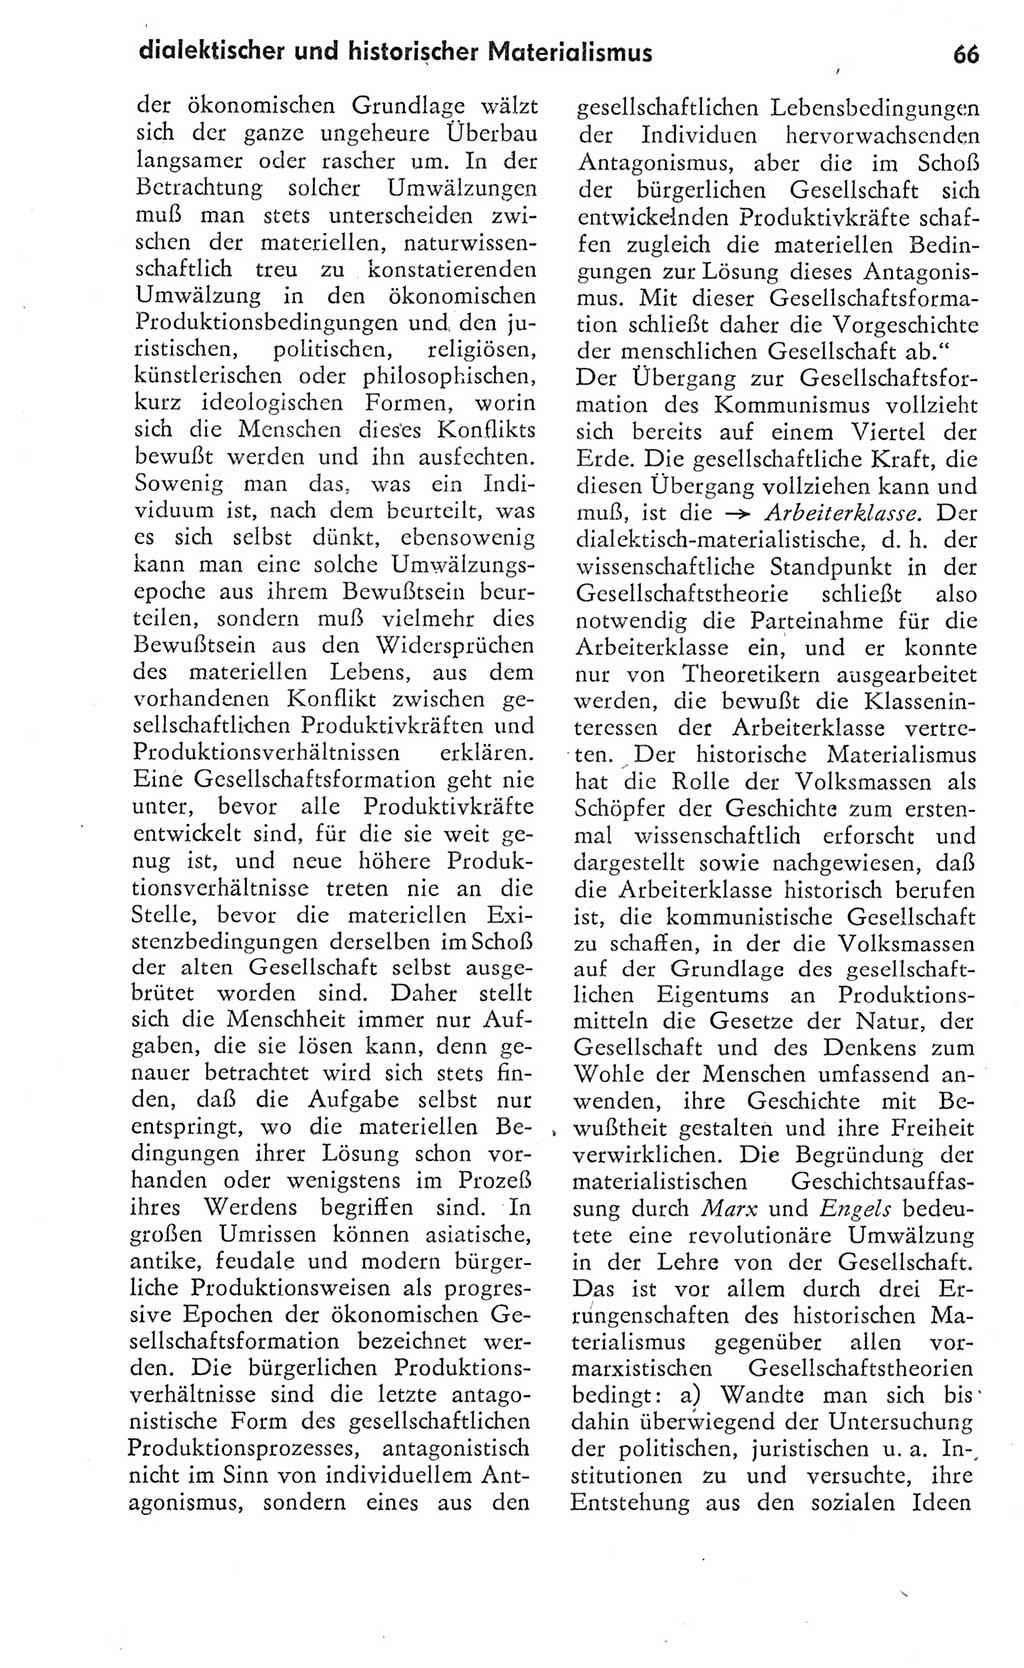 Kleines Wörterbuch der marxistisch-leninistischen Philosophie [Deutsche Demokratische Republik (DDR)] 1975, Seite 66 (Kl. Wb. ML Phil. DDR 1975, S. 66)